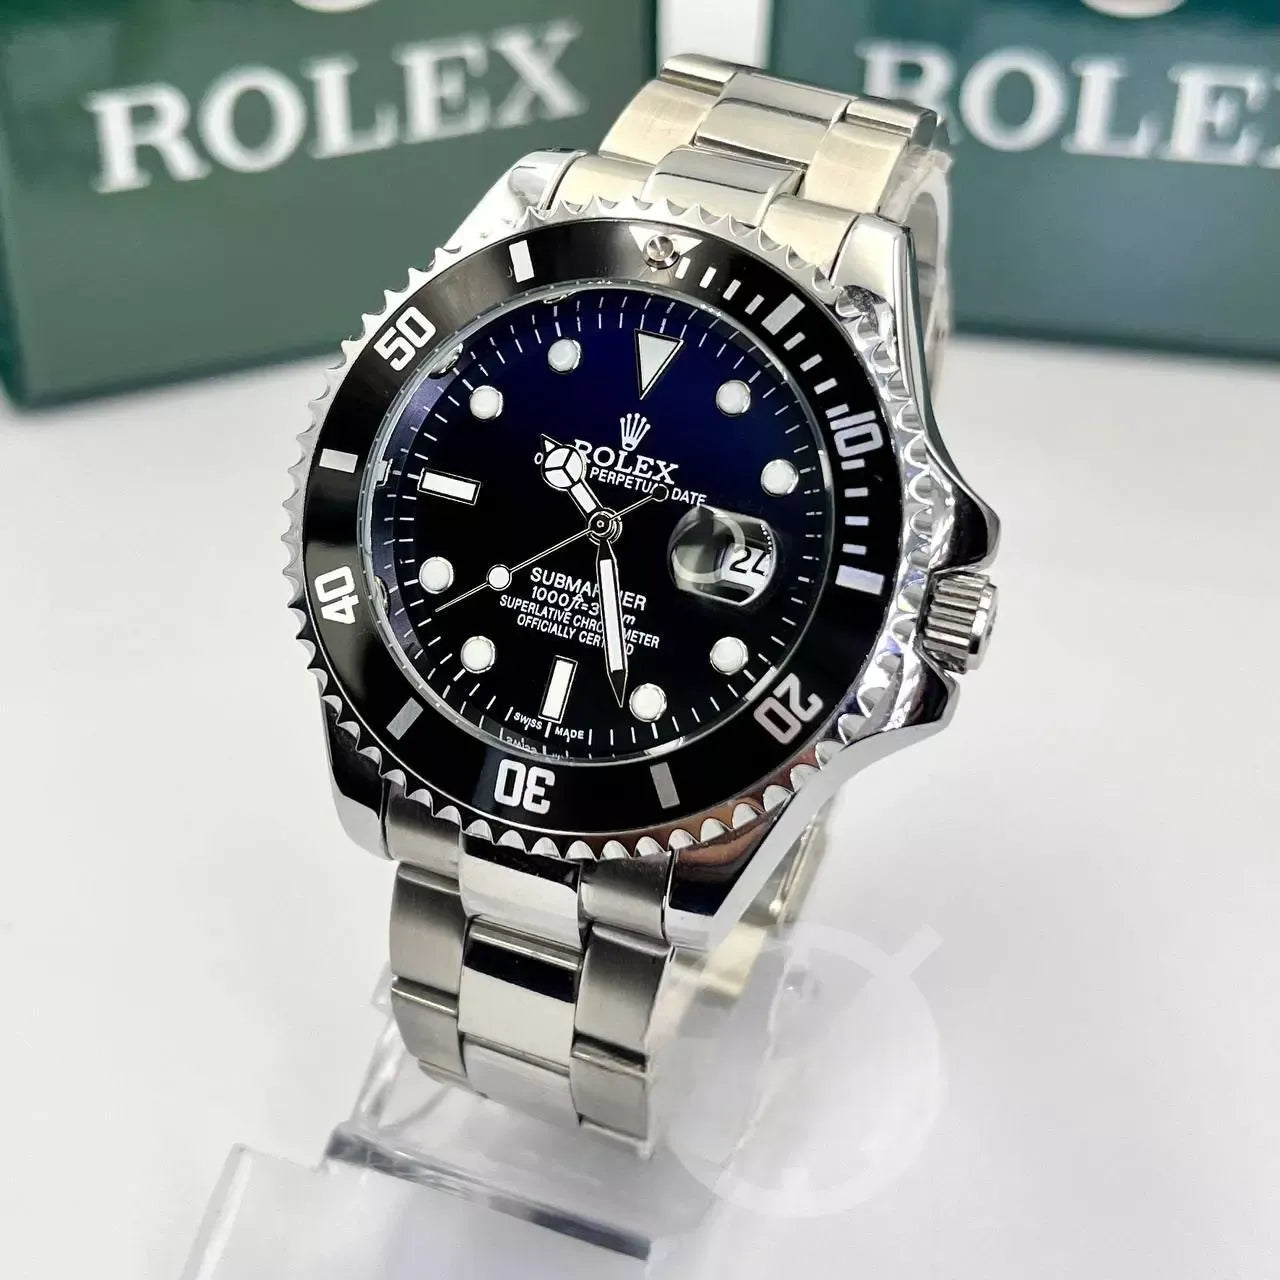 Relógio Rolex Submariner Prata/Preto nevoa linha Gold a prova dagua